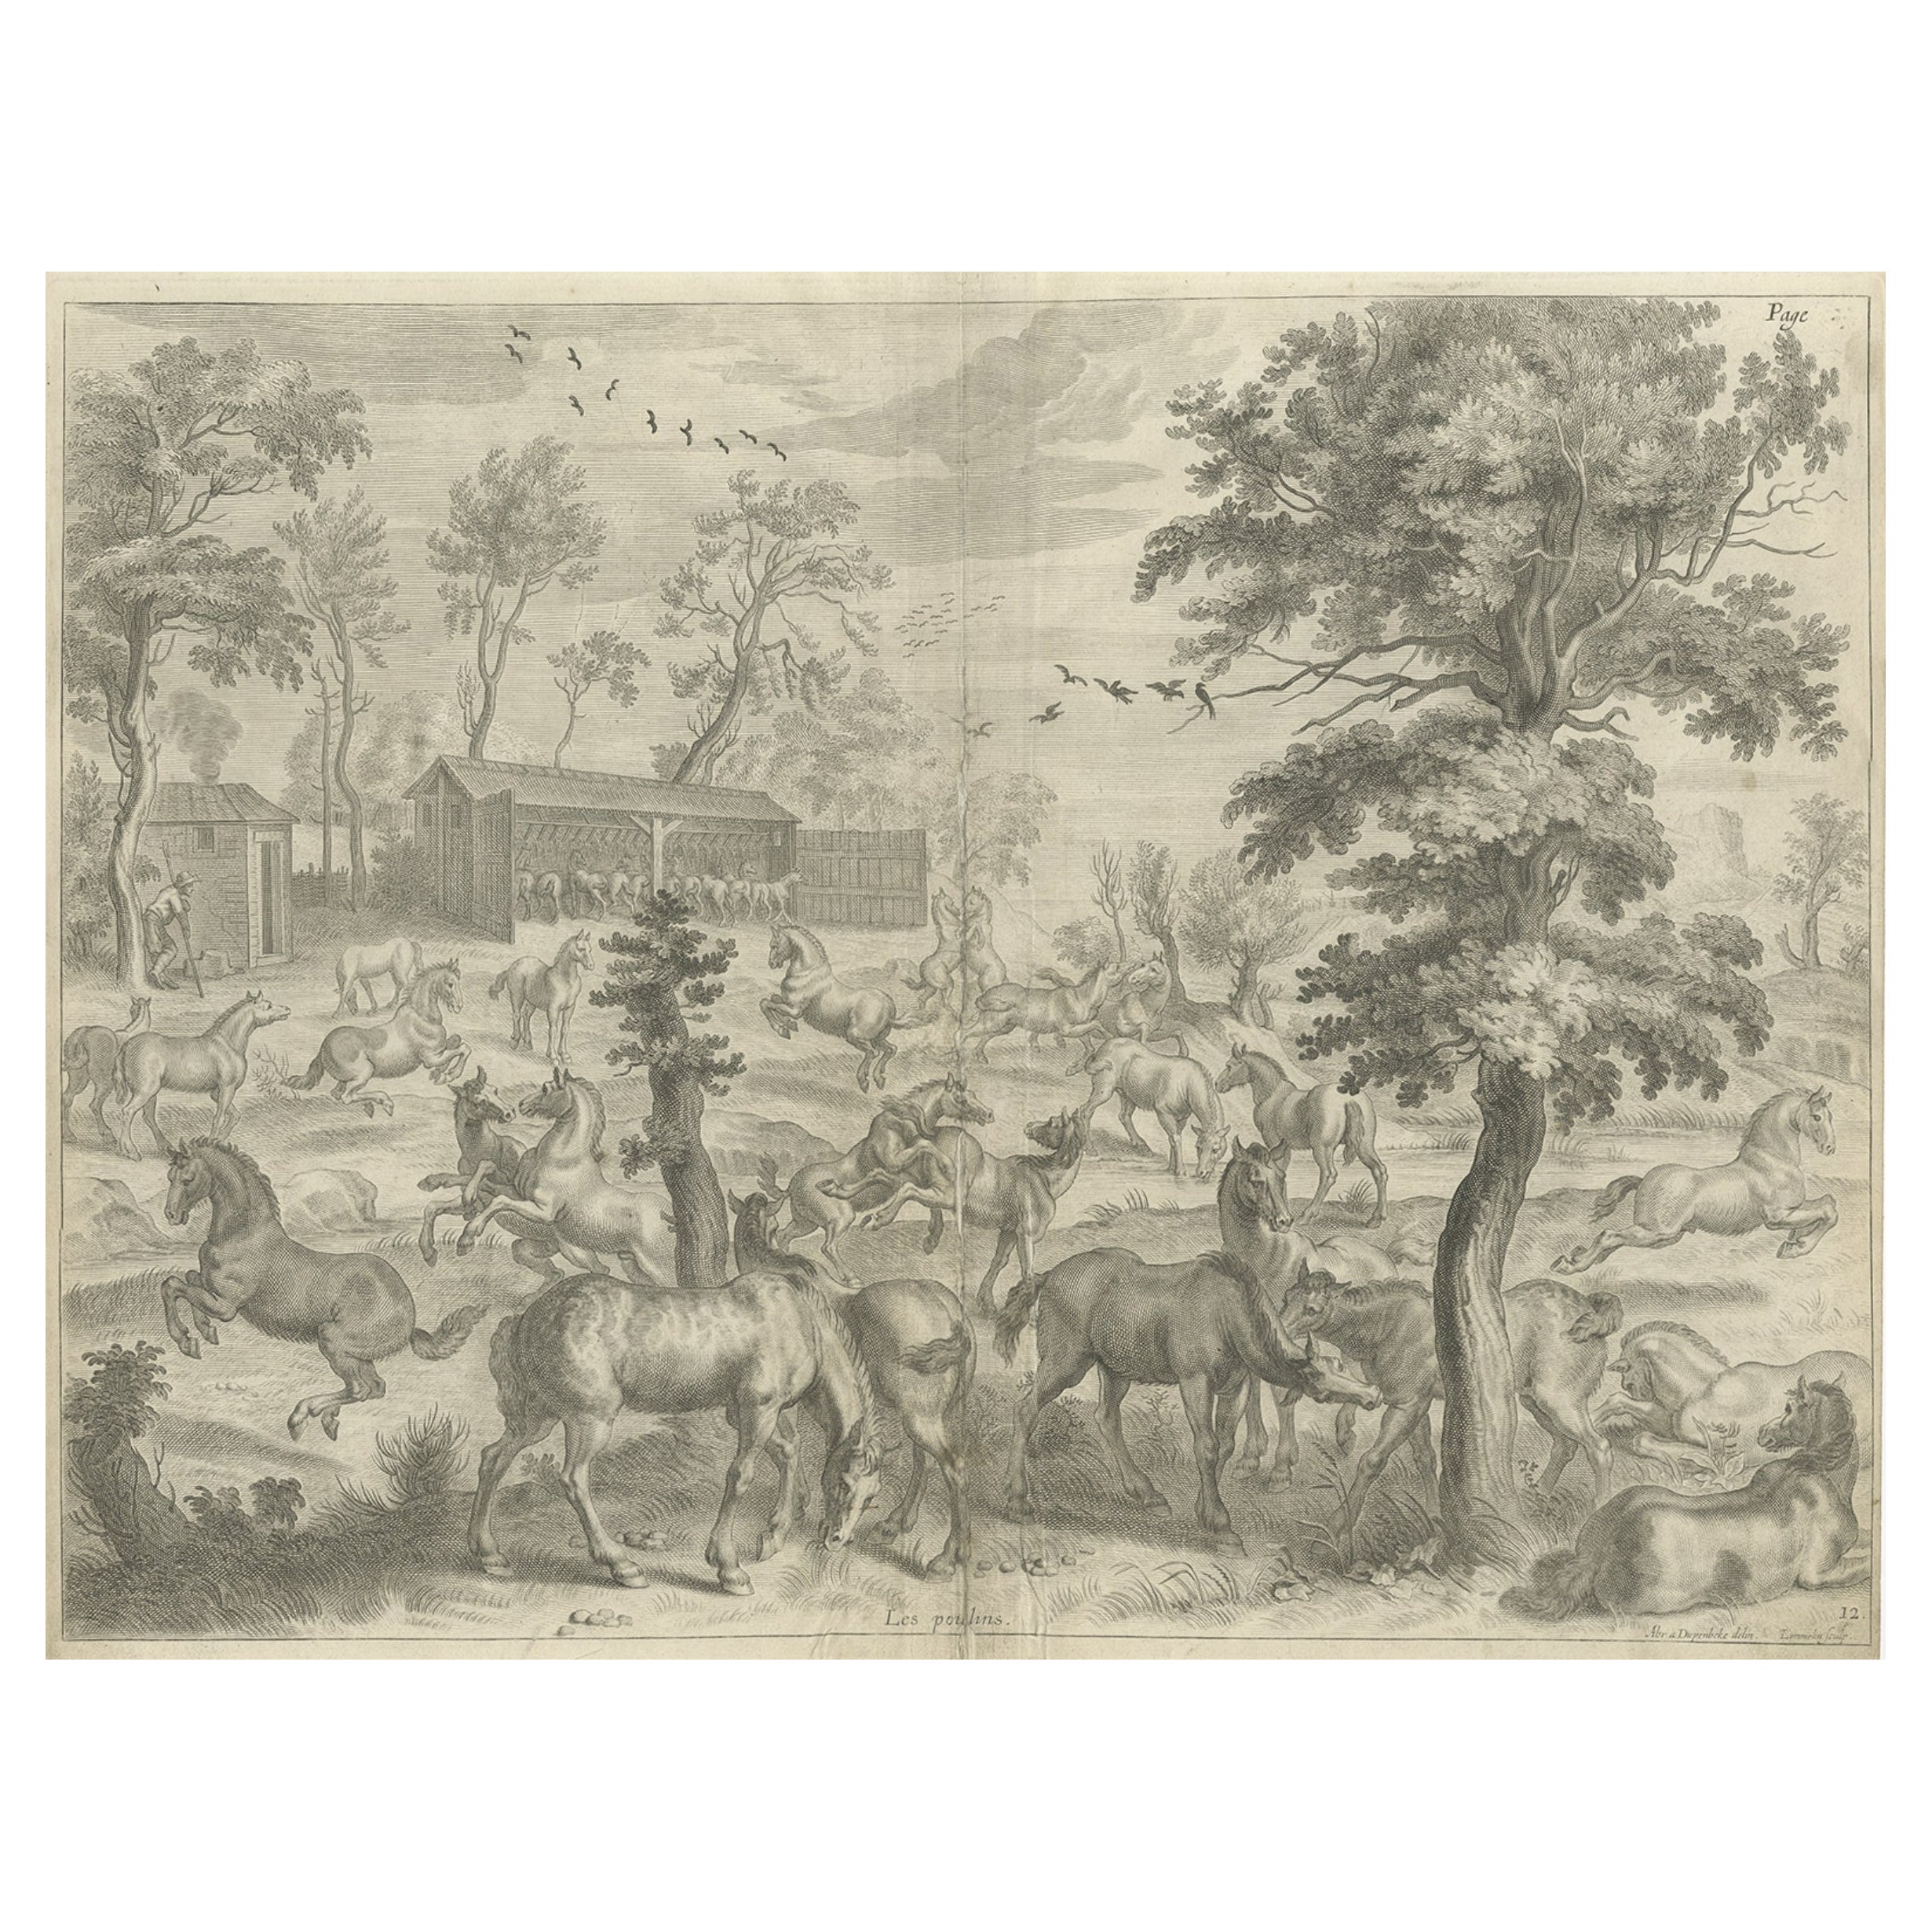 Seltener und interessanter Druck einer Pferdestudie, ca. 1665